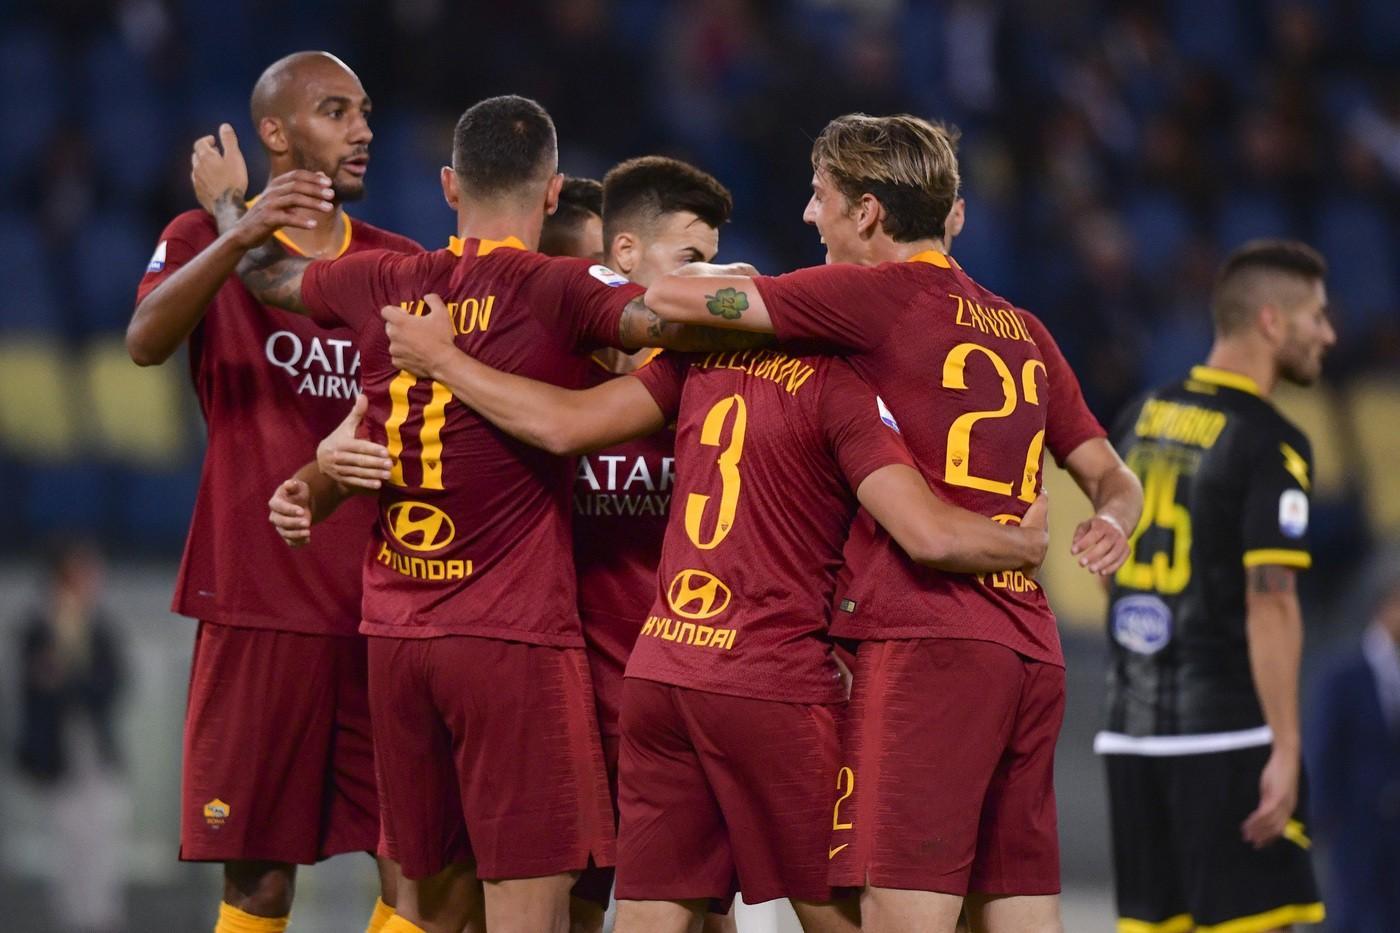 La Roma torna a vincere: battuto 4-0 il Frosinone all'Olimpico©LaPresse